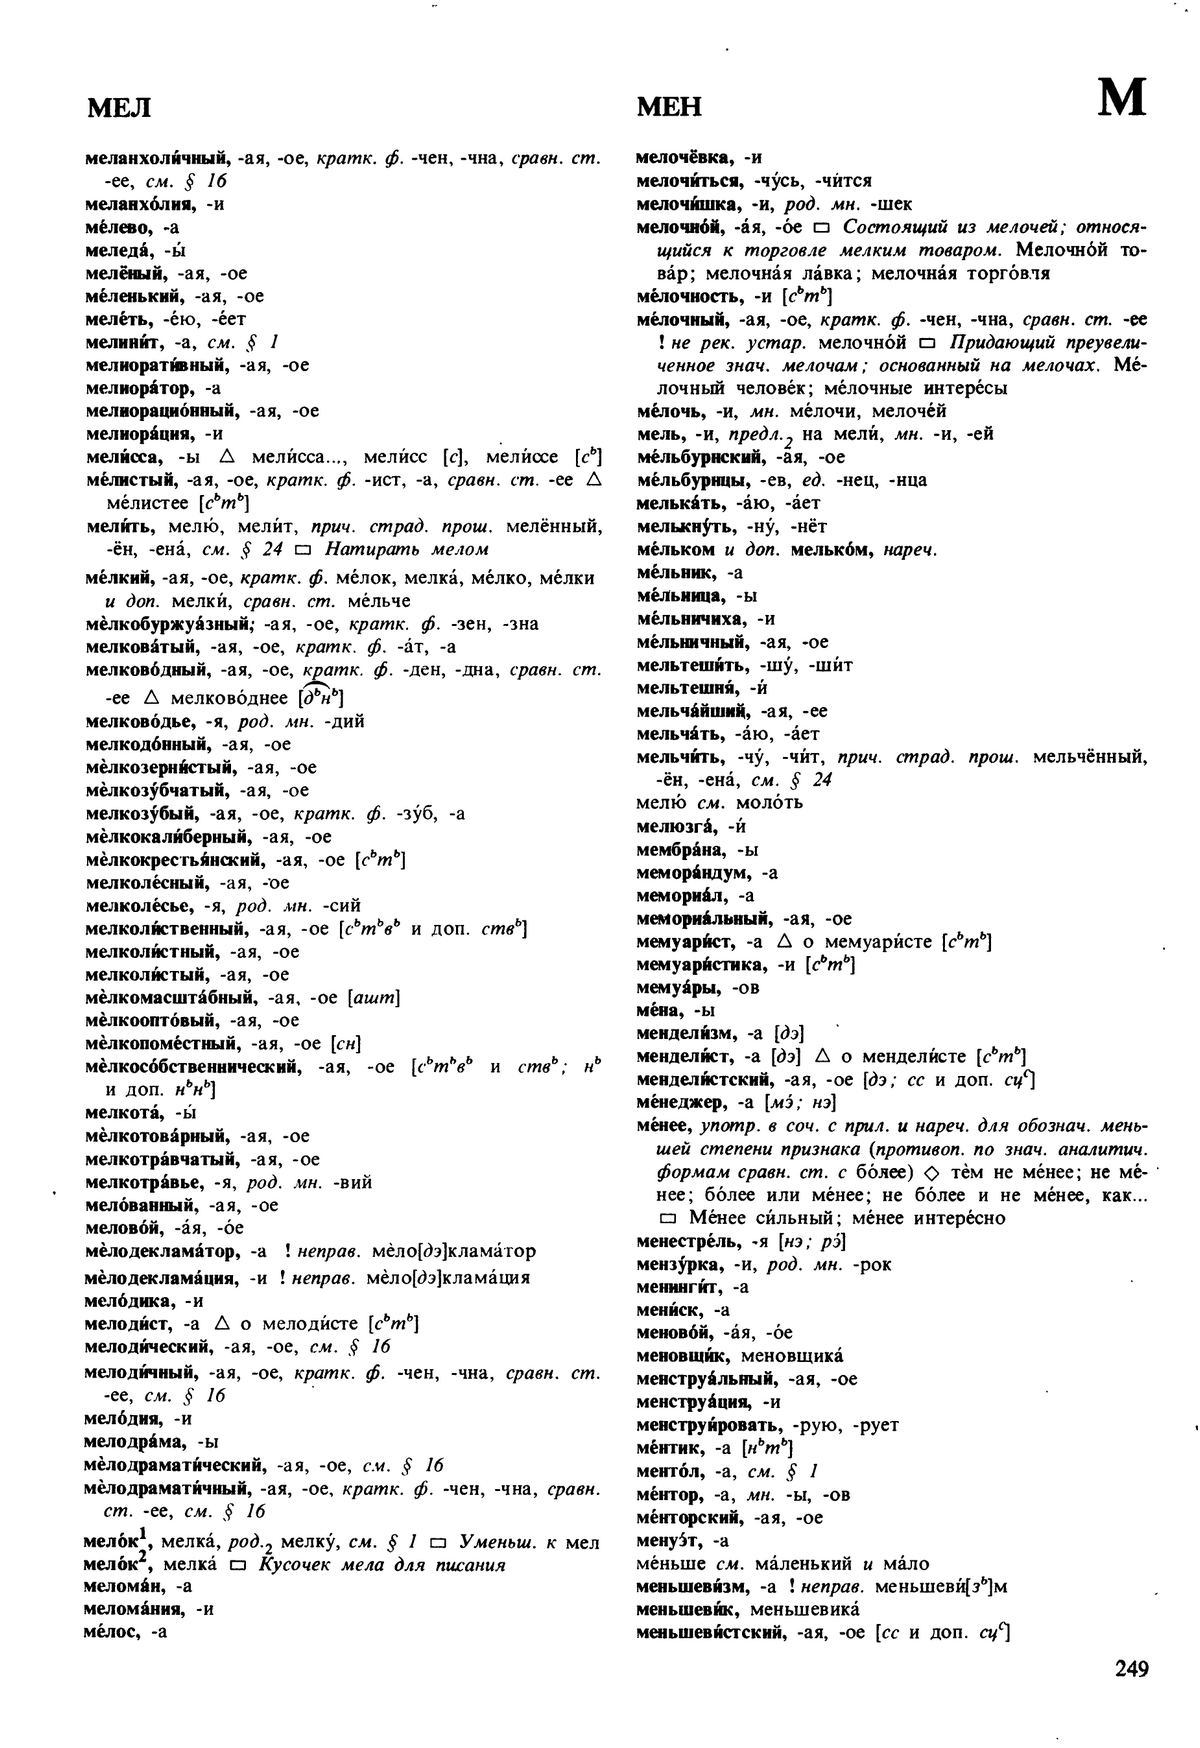 Фотокопия pdf / скан страницы 249 орфоэпического словаря под редакцией Аванесова (5 издание, 1989 год)